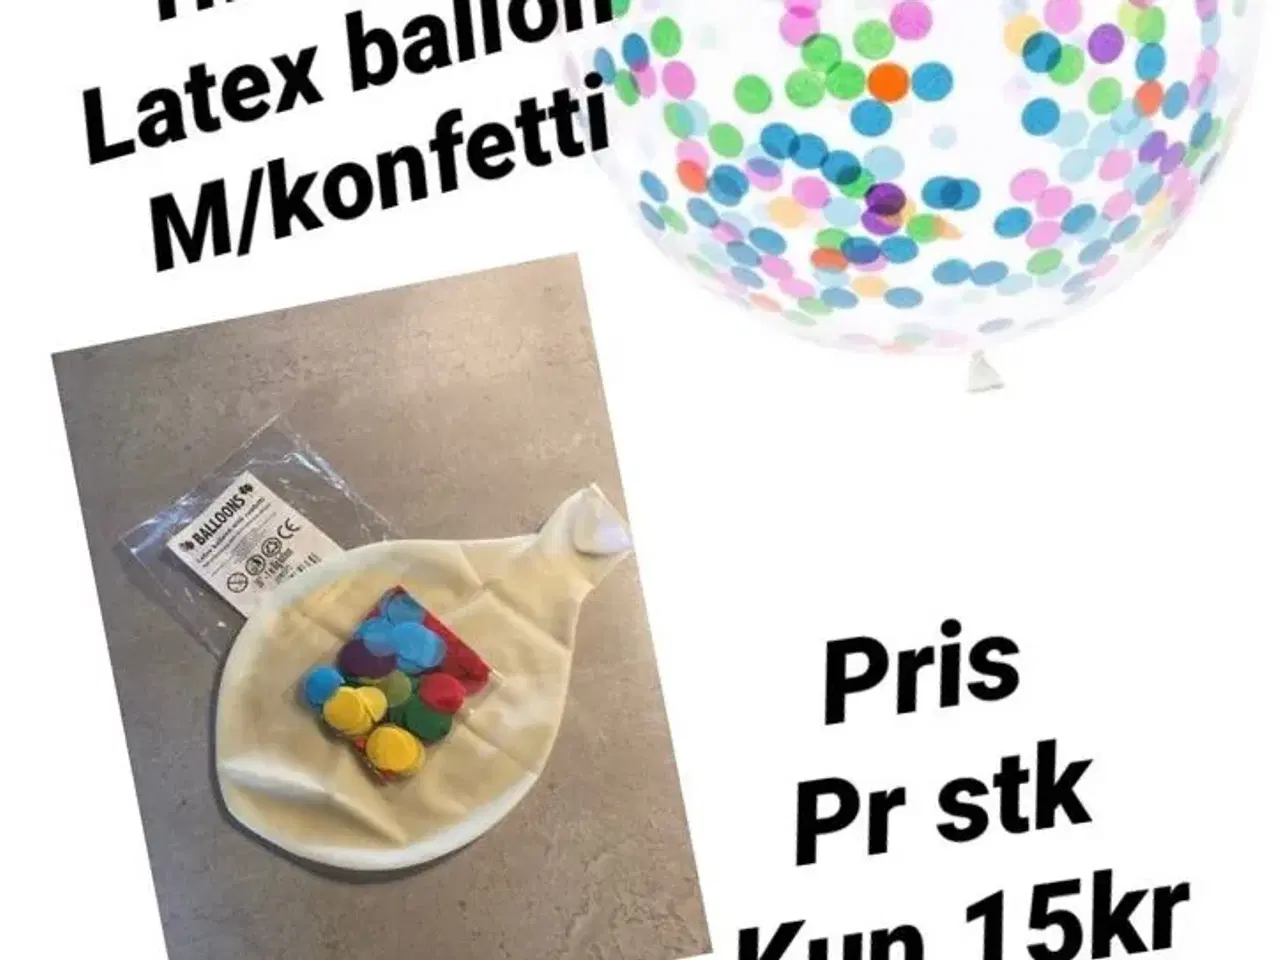 Billede 1 - 1 stk kæmpe 1meters ballon m/konfetti